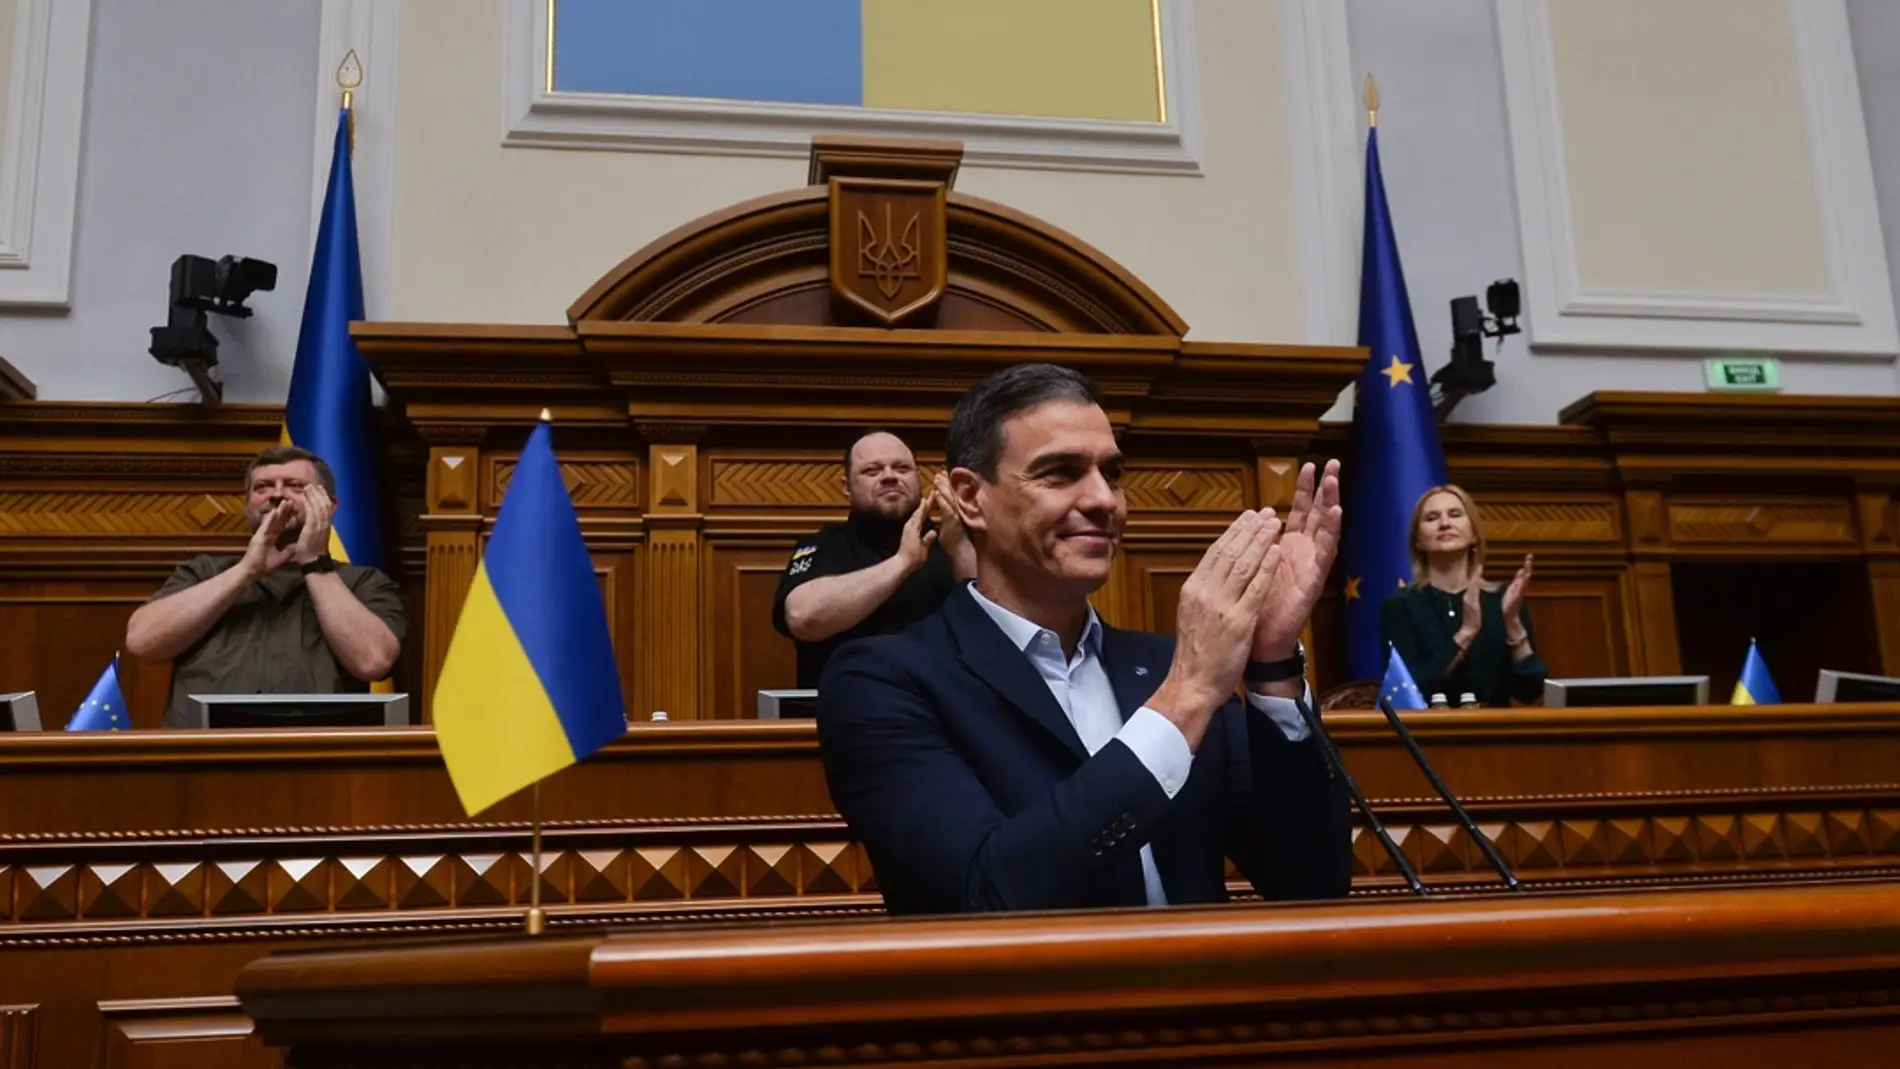 Pedro Sánchez tras su discurso en el parlamento de Ucrania